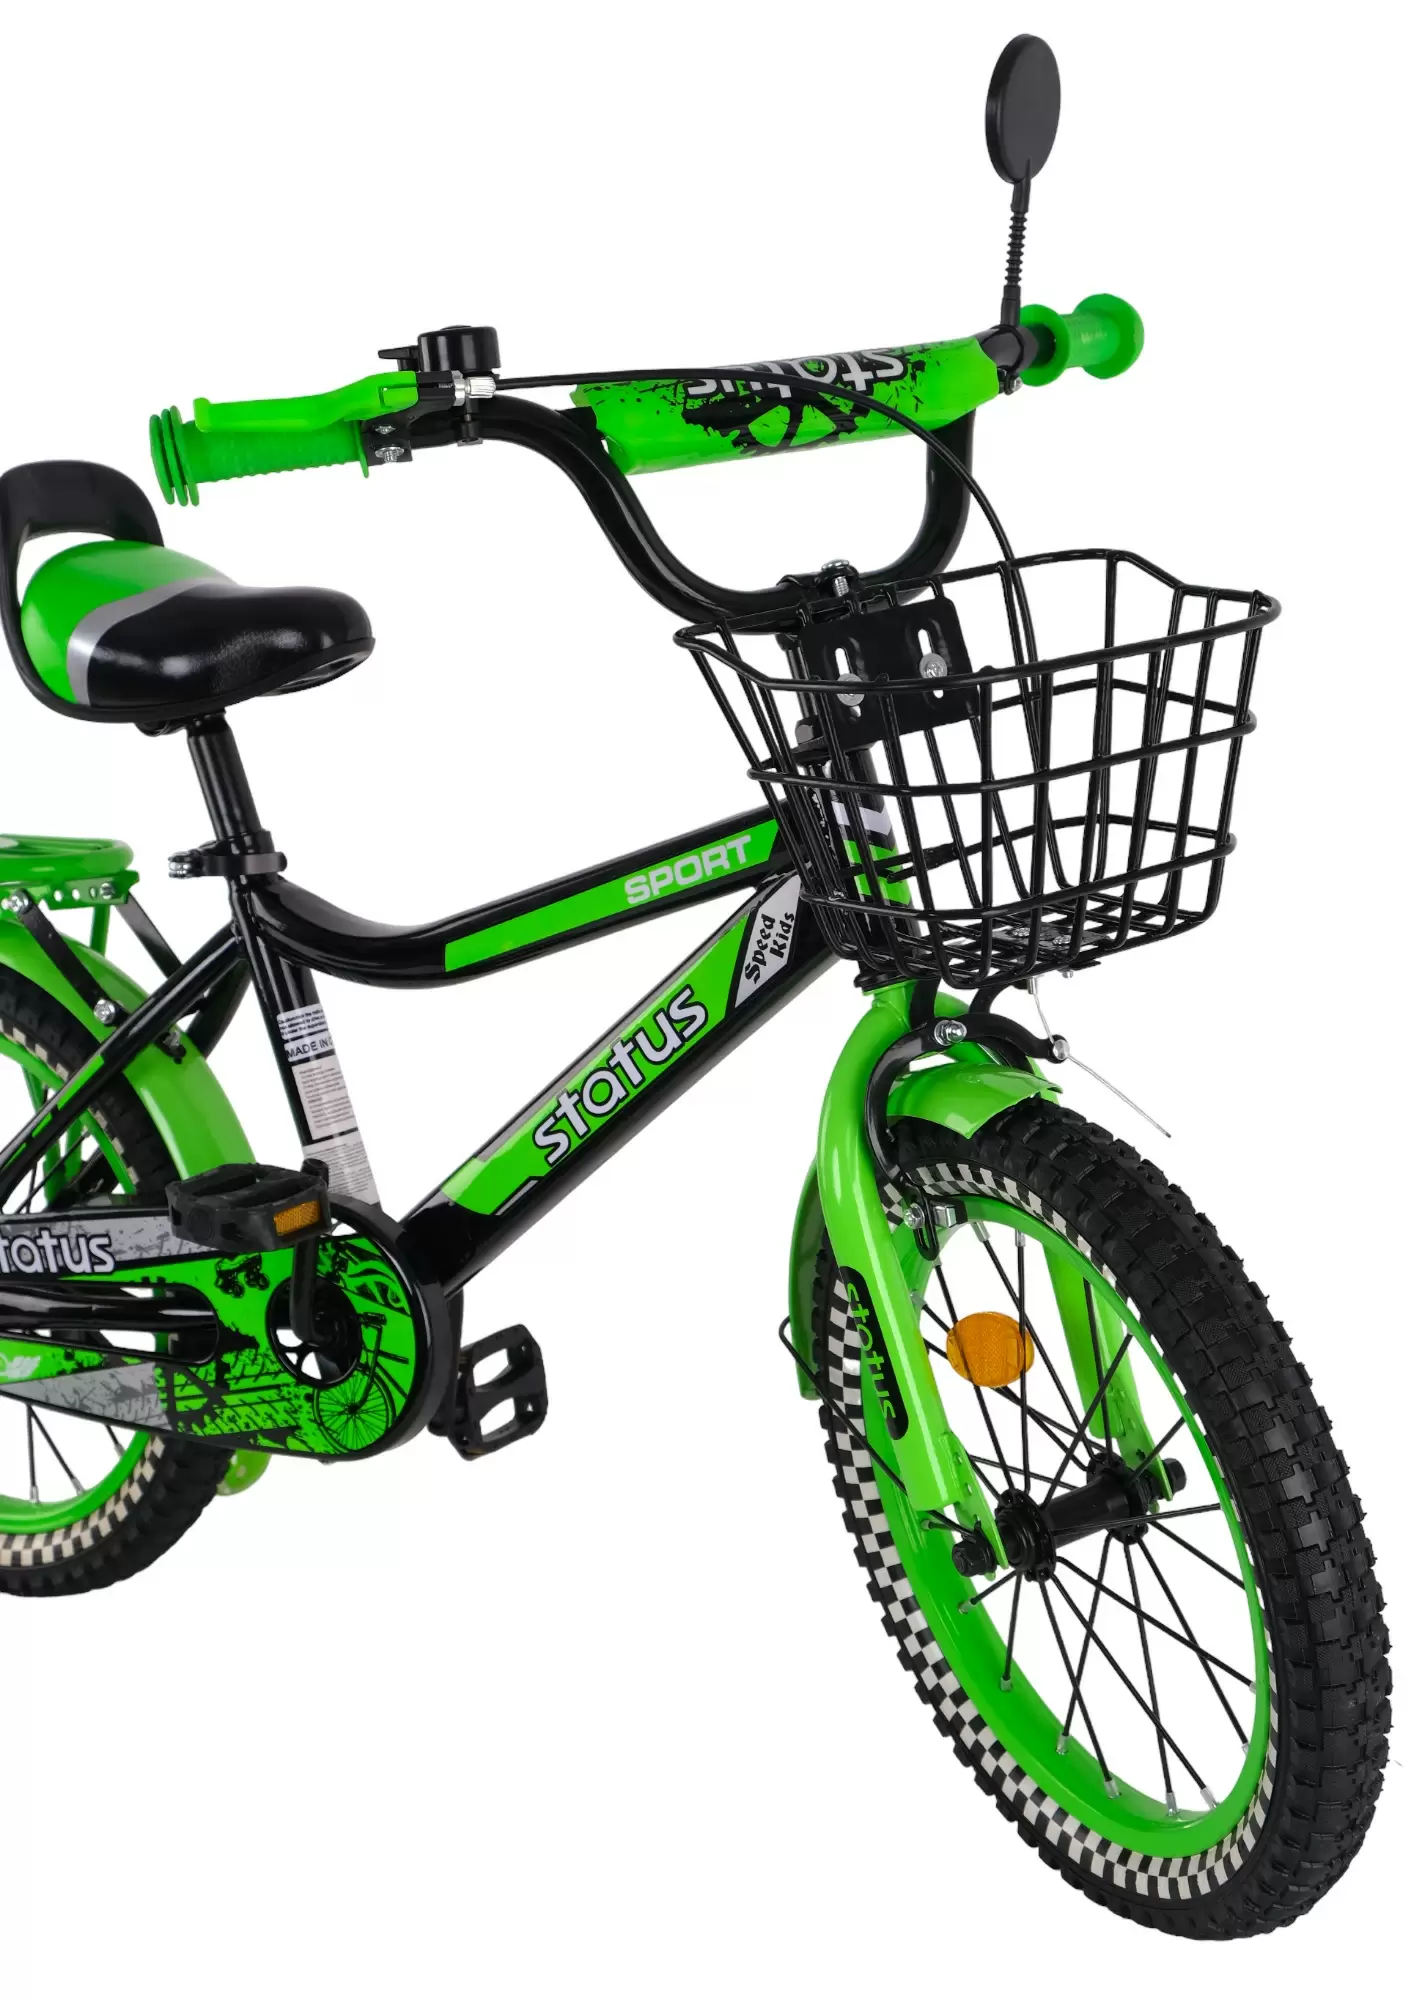 Велосипед Status 16 дюймов зеленый (5 - 6 лет)